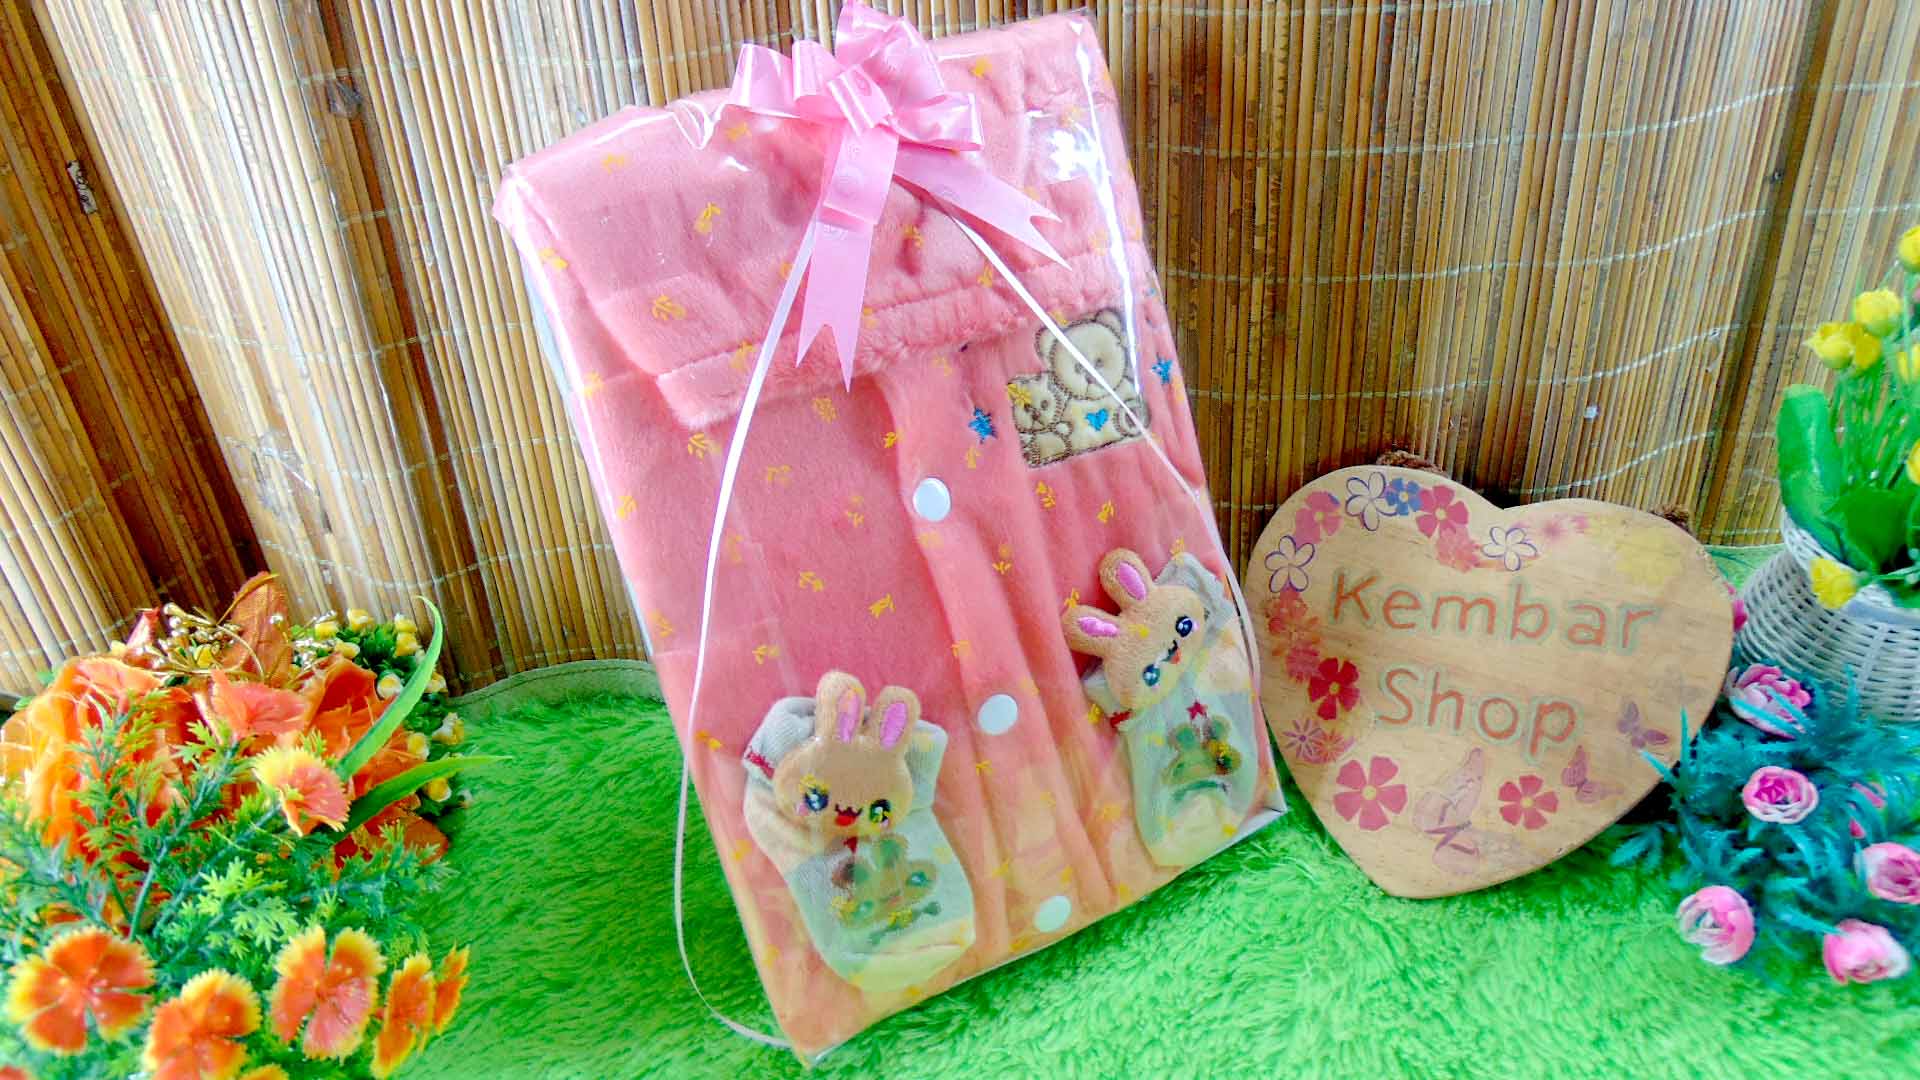 7 FREE KARTU UCAPAN paket kado lahiran bayi baby gift set box jaket plus sock ANEKA motif